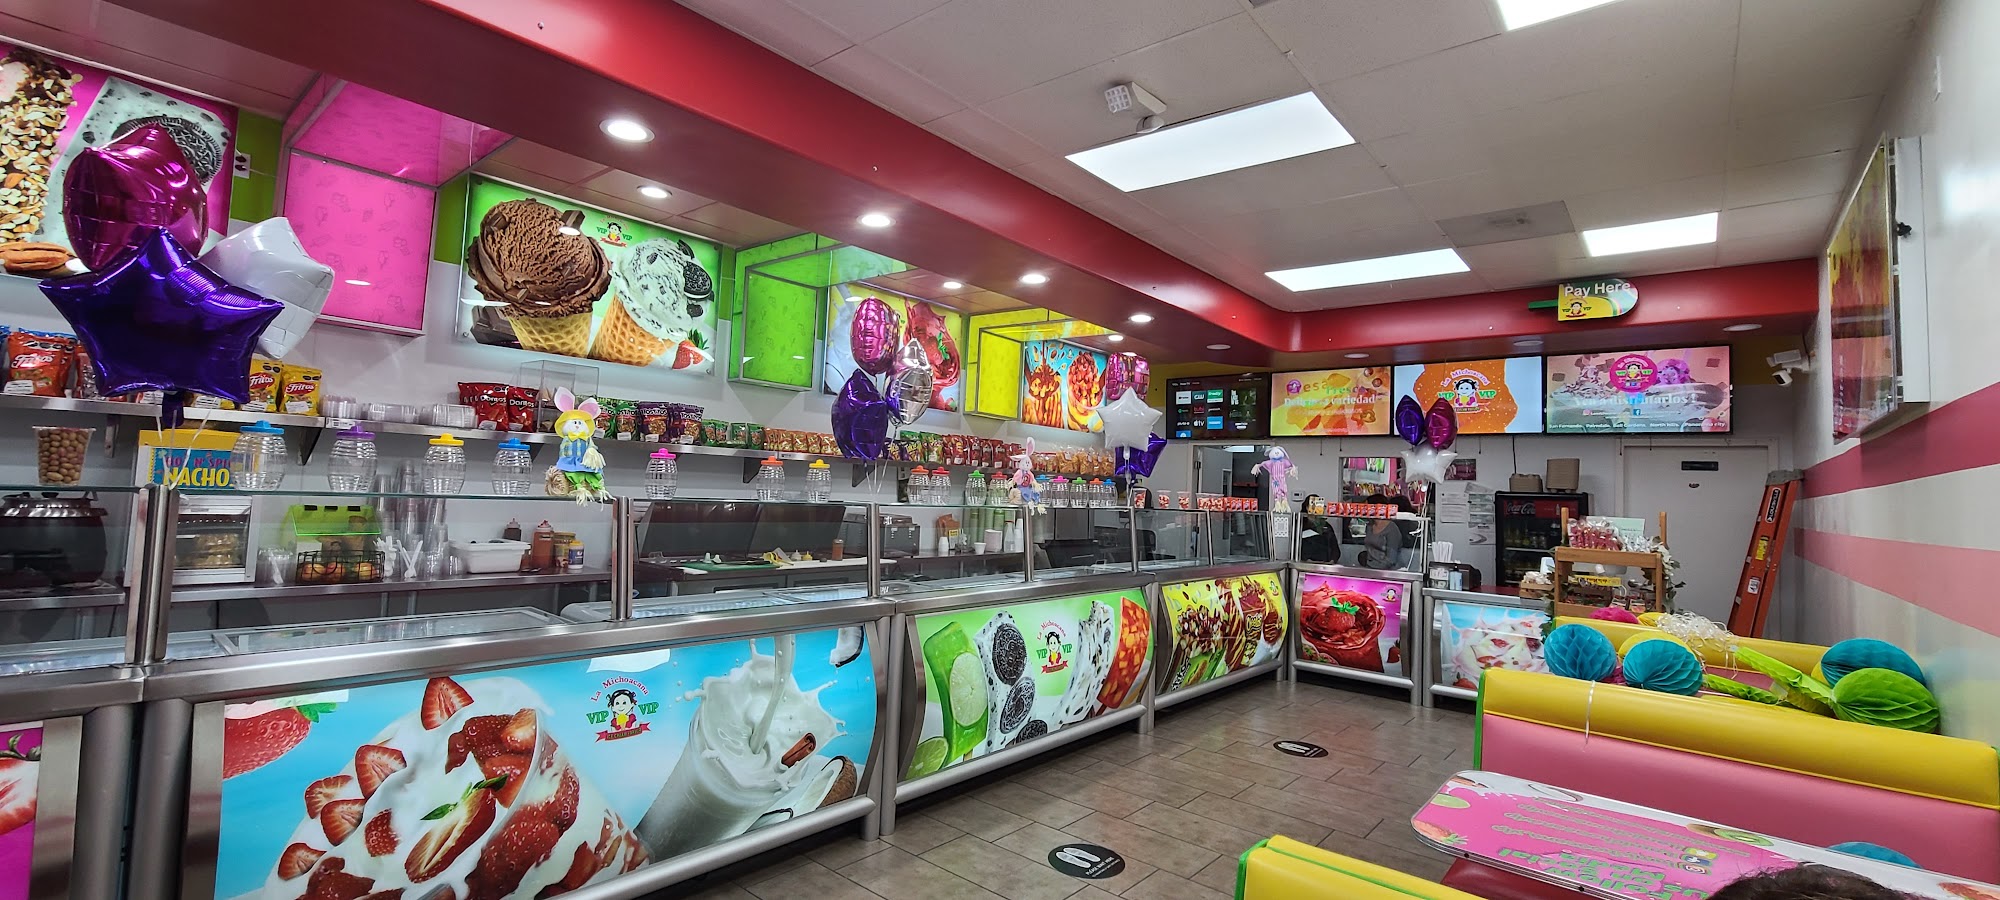 La Michoacana Ice Cream Parlor